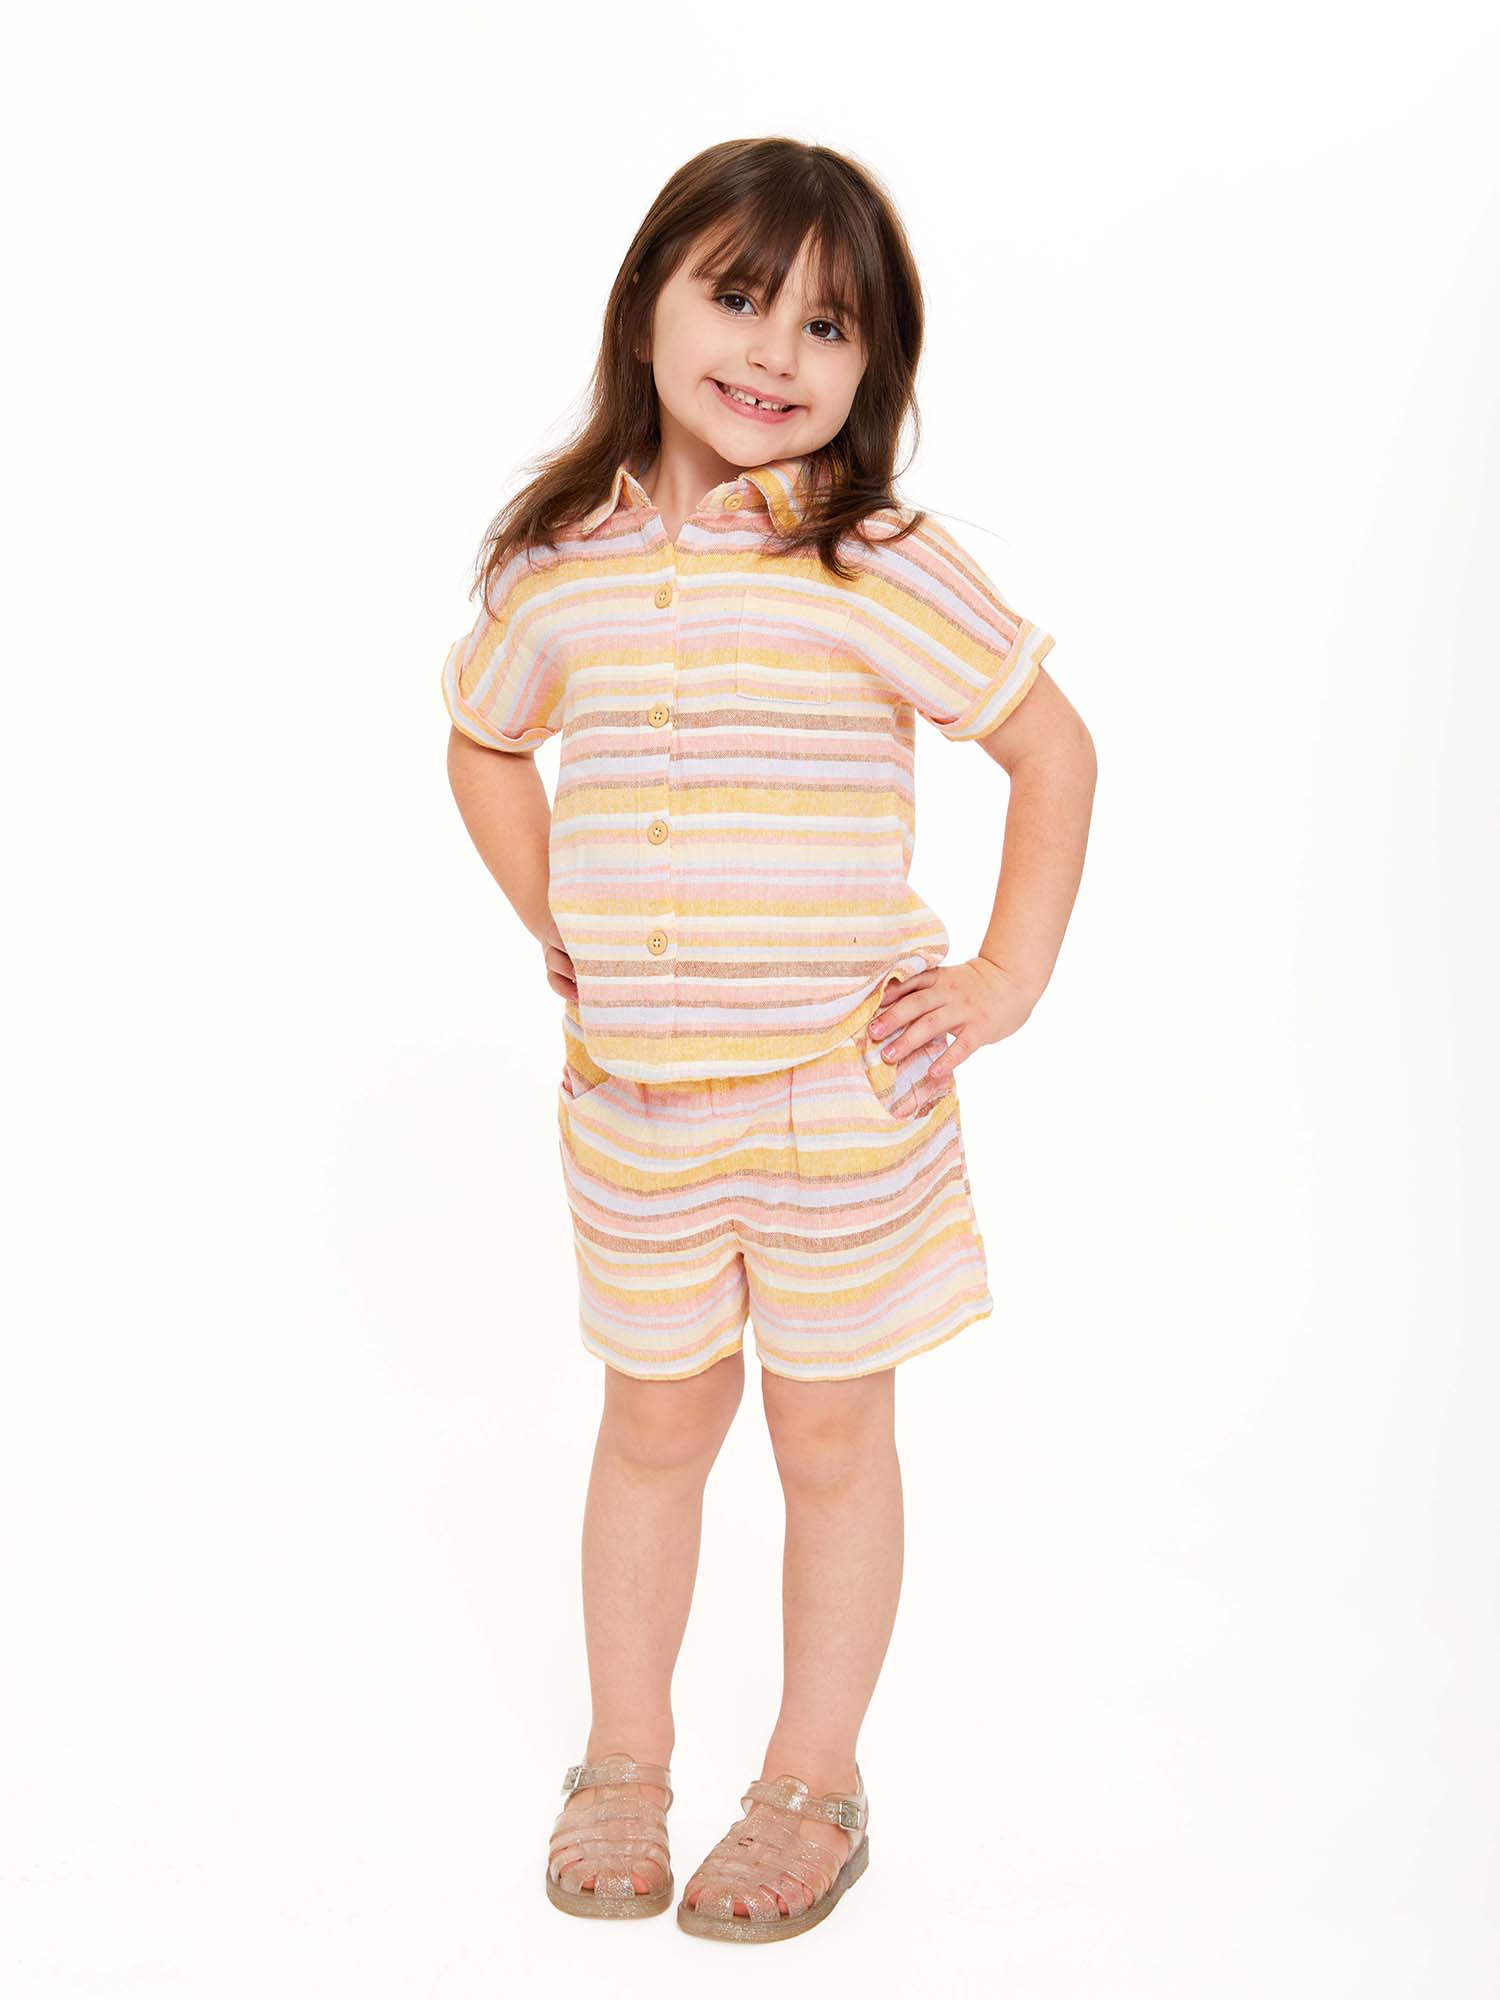 Wonder Nation Toddler Girls Elevated Shirt and Shorts Set, Sizes 12M-5T - image 4 of 9